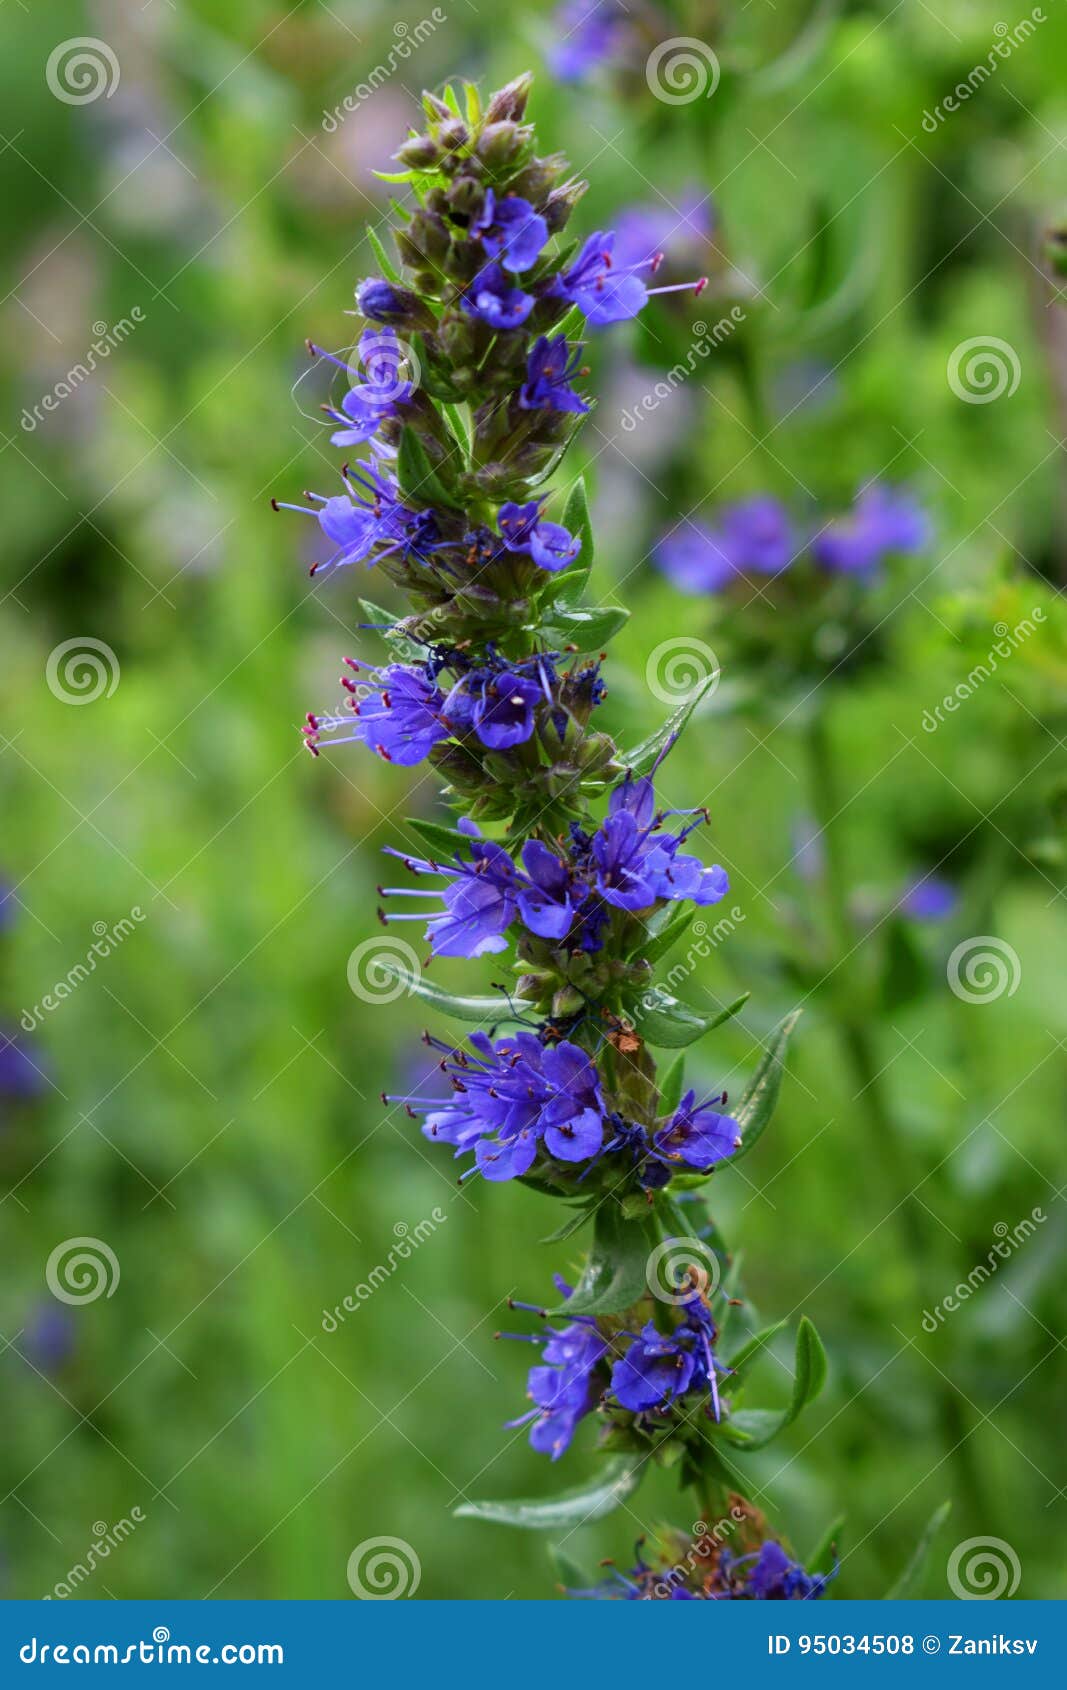 blooming blue hyssop